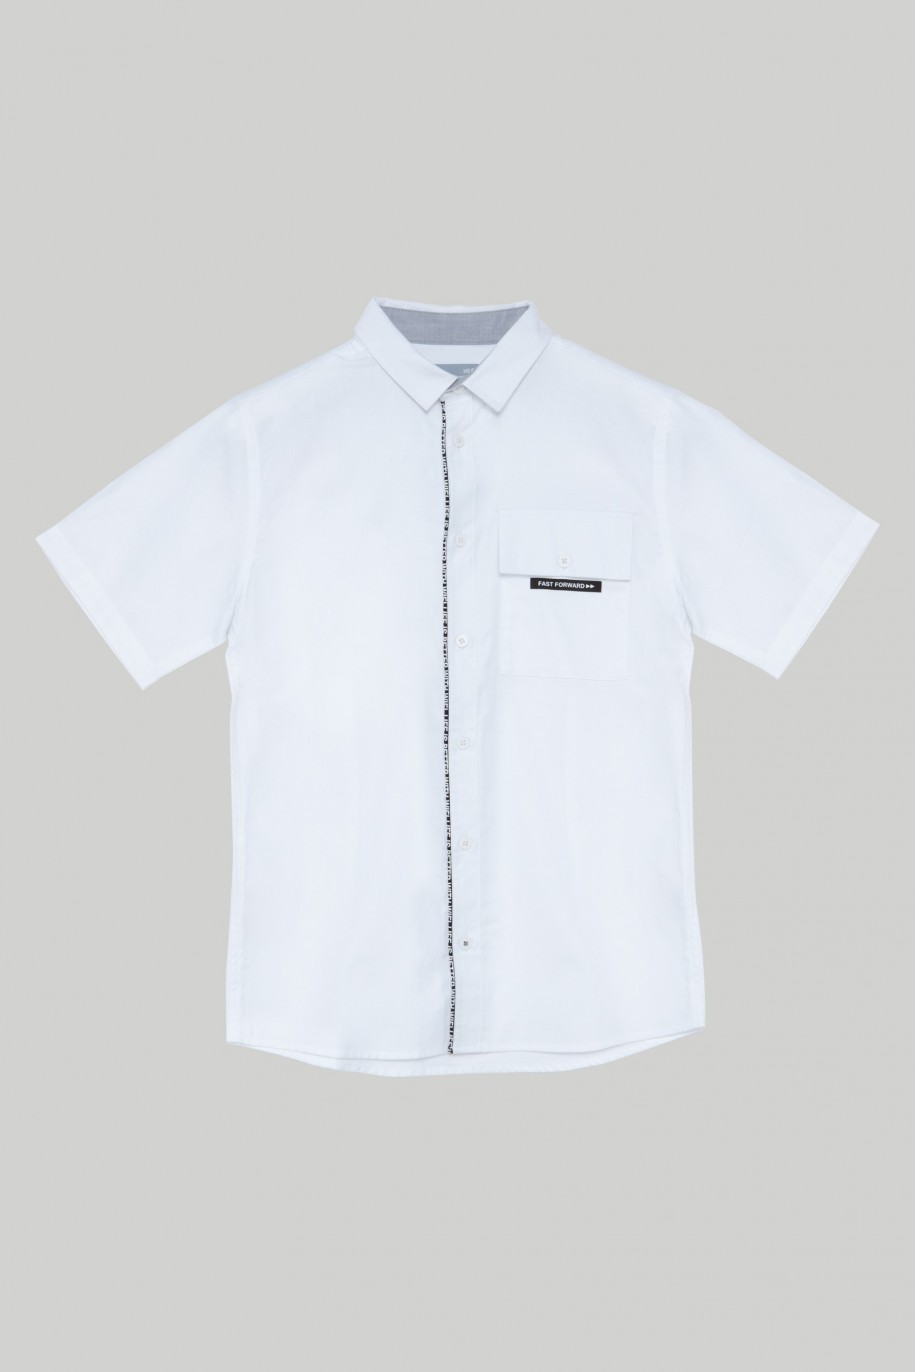 Biała koszula z krótkim rękawem, kieszenią i nadrukiem dla chłopaka - 28204